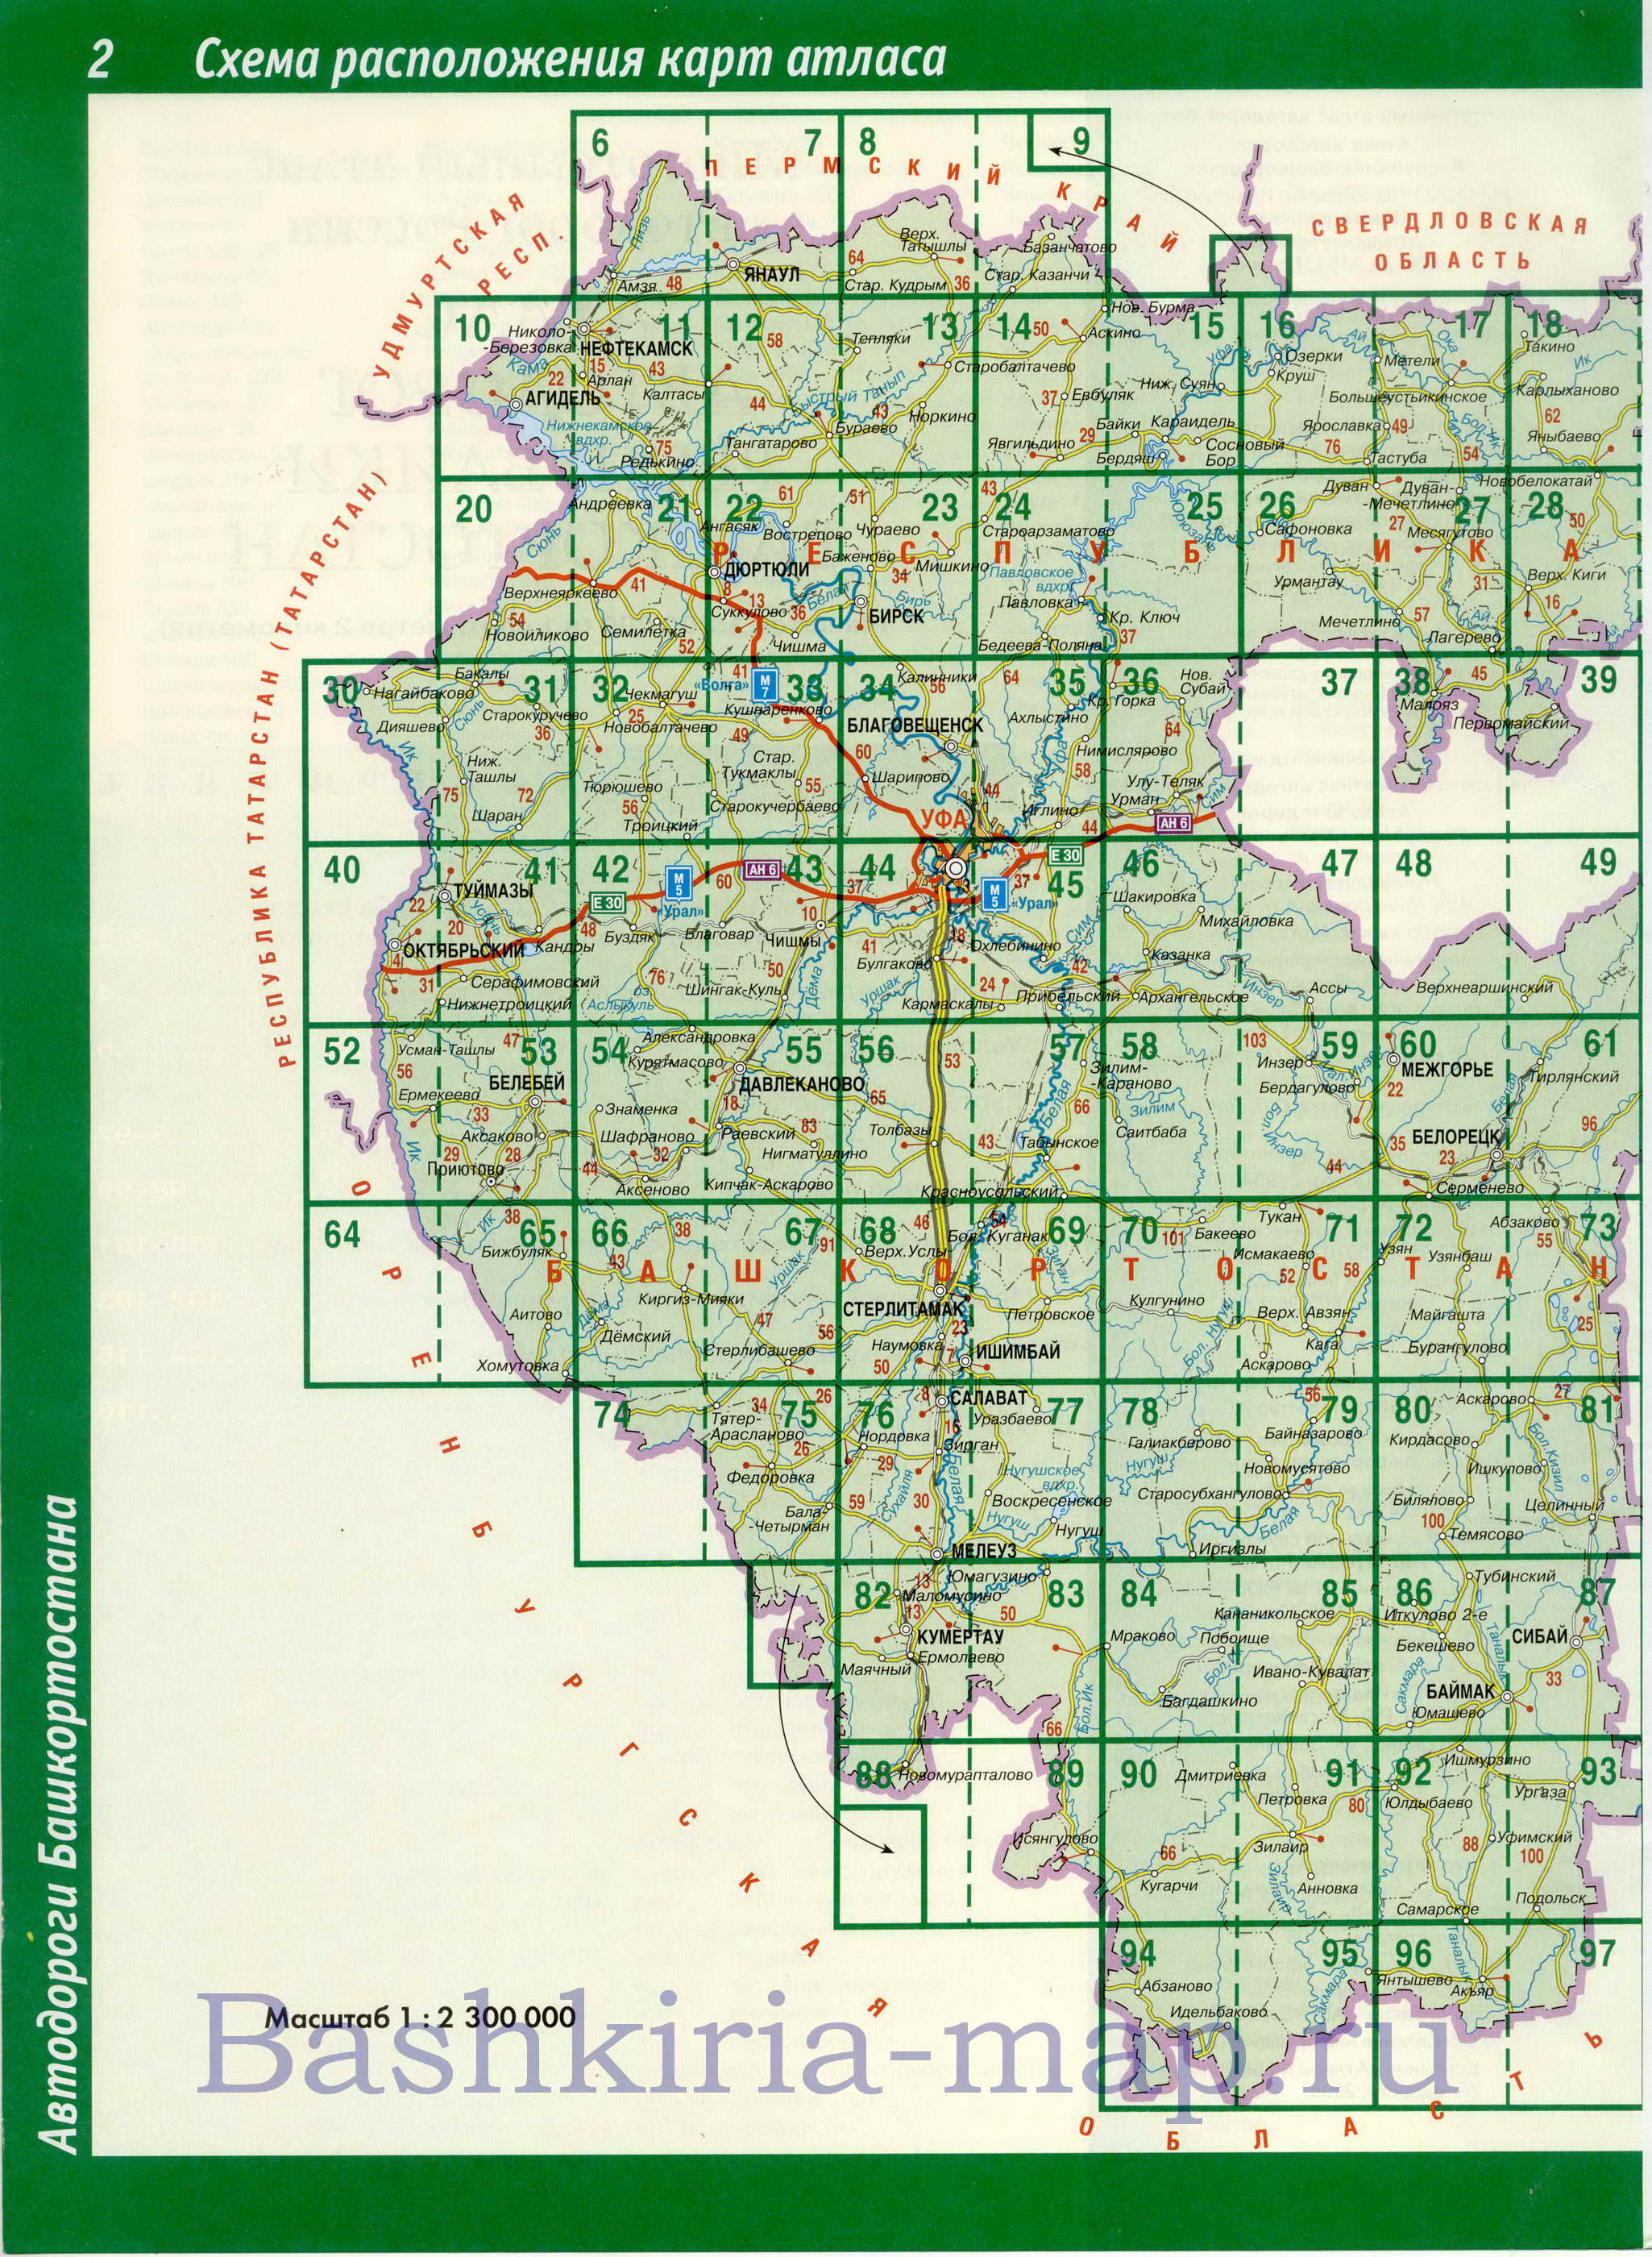  Карта Башкортостана. Подробная карта Башкортостана с границами административных районов, A0 - 